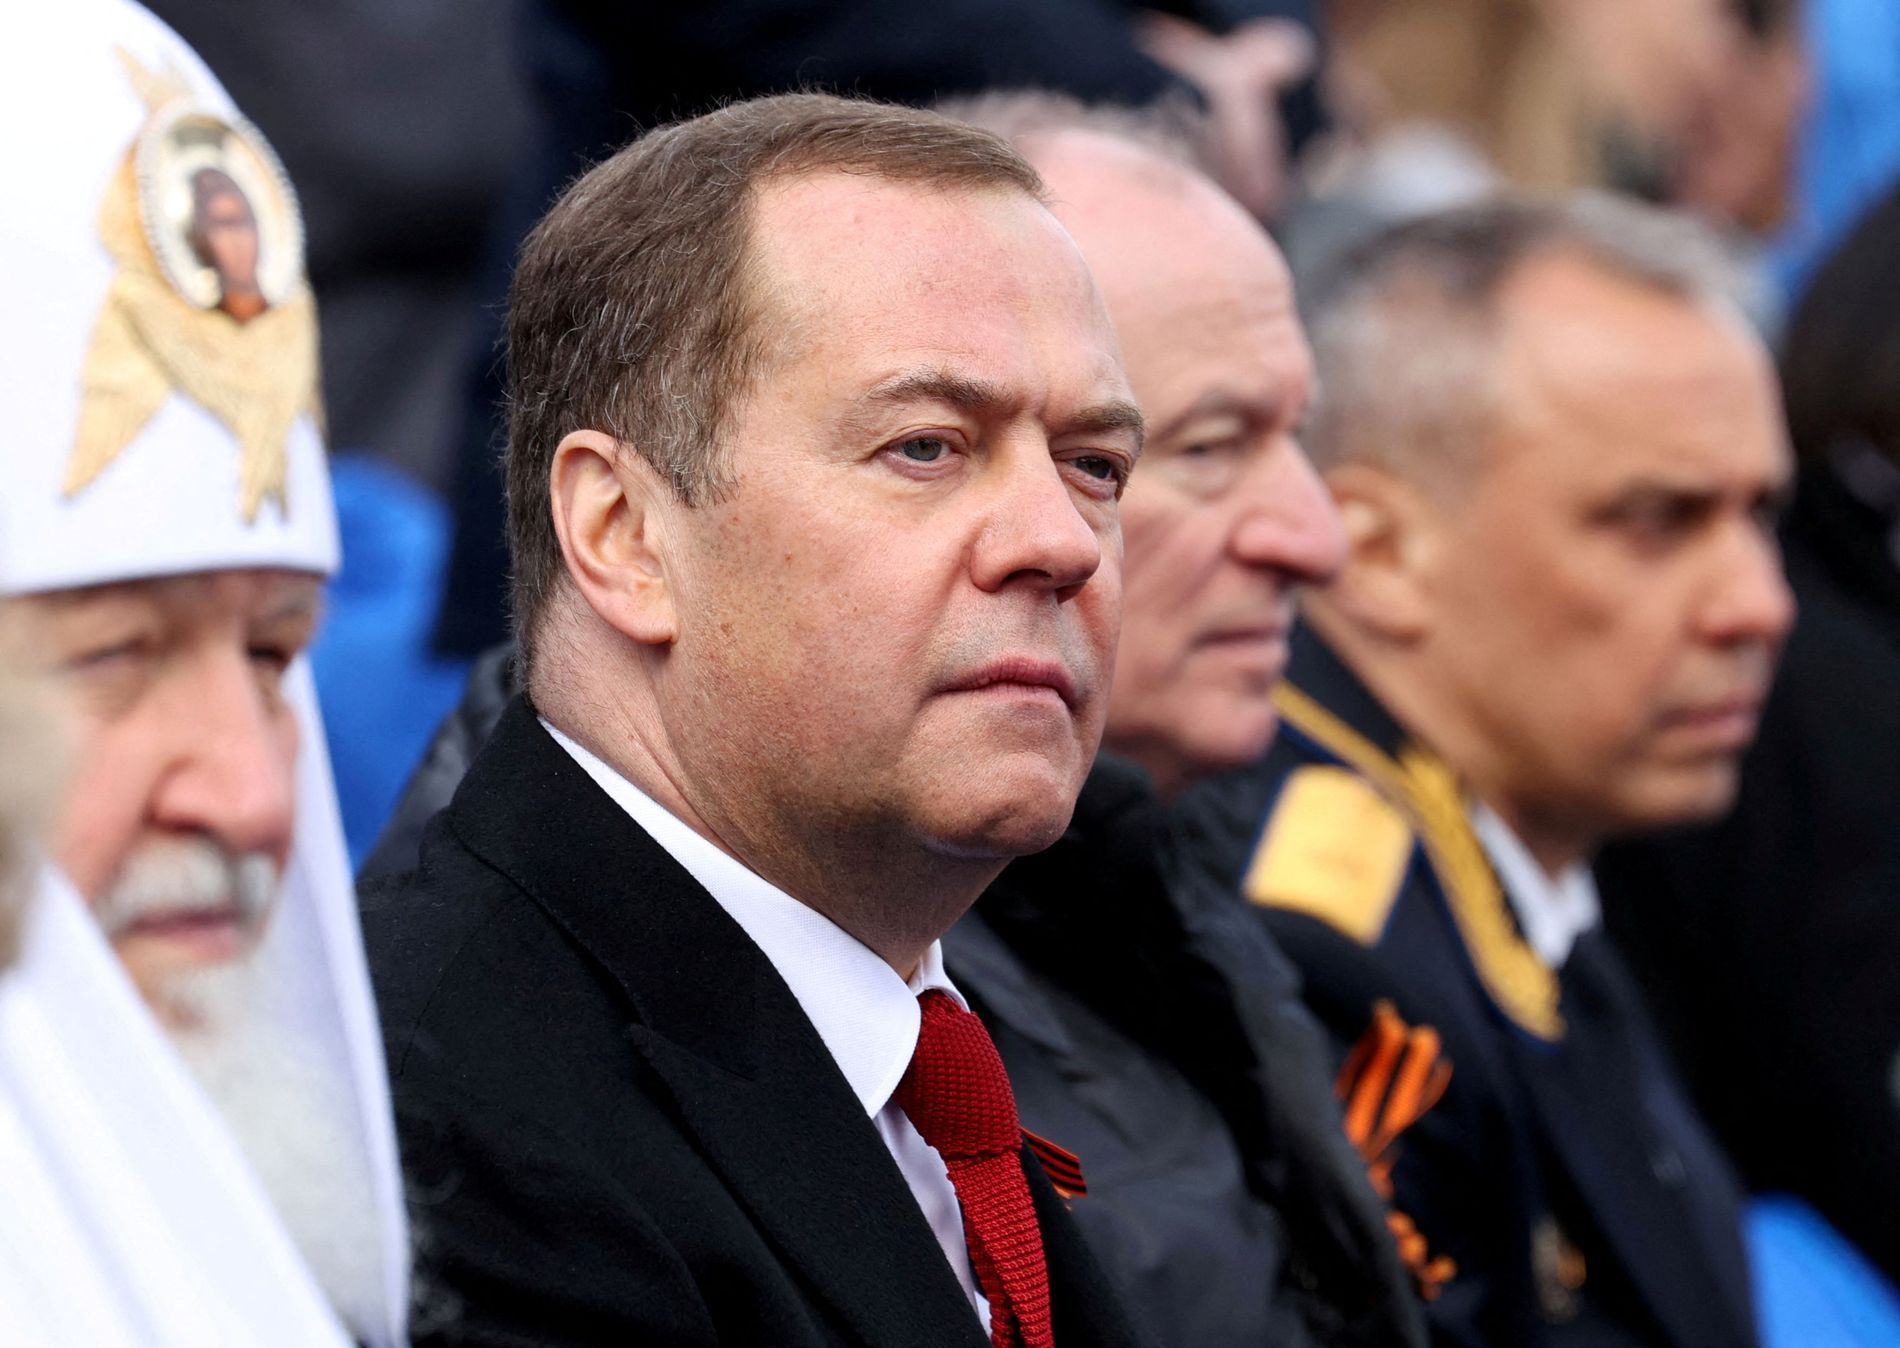 Dmitrij Medveděv vedle patriarchy Ruské pravoslavné církve Kirilla na vojenské přehlídce v Moskvě.